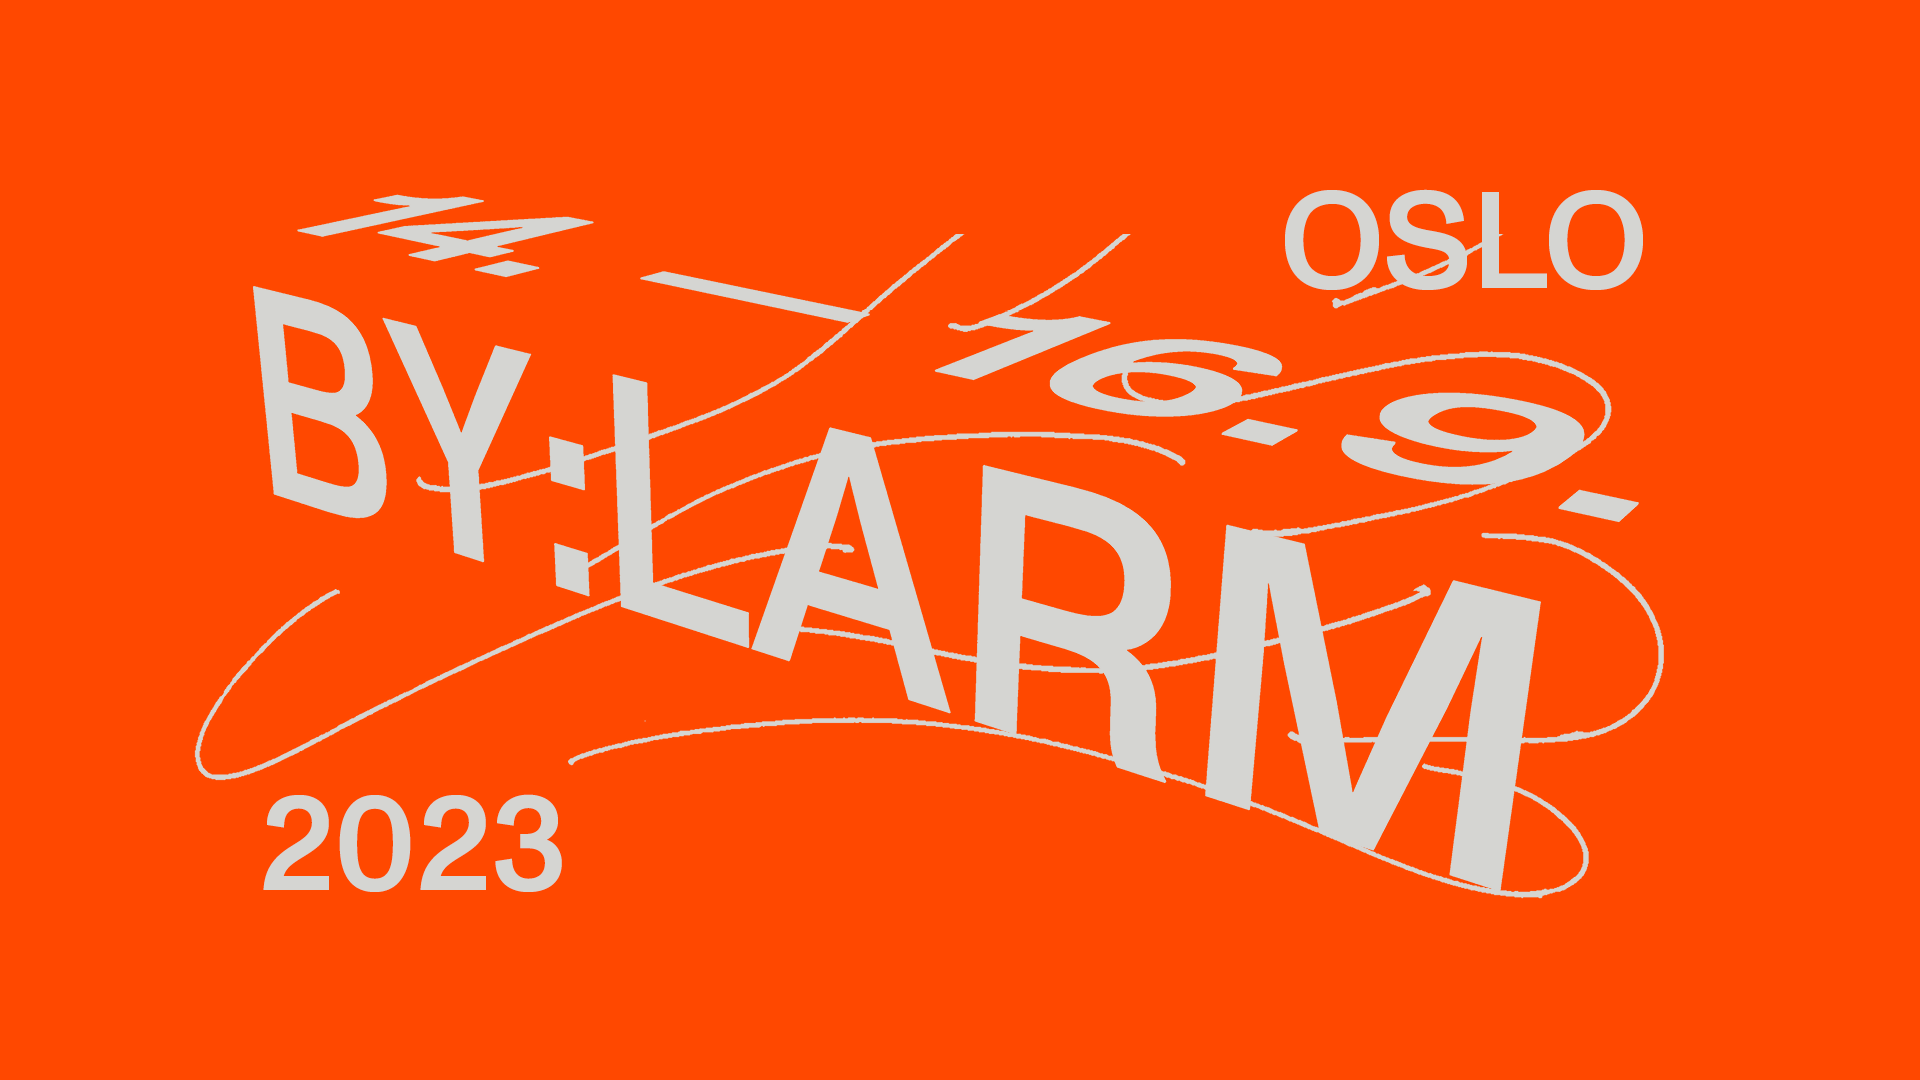 En plakat med ordene oslo by larm med hvide bogstaver på orange baggrund. Med søgeordet "Rabat".